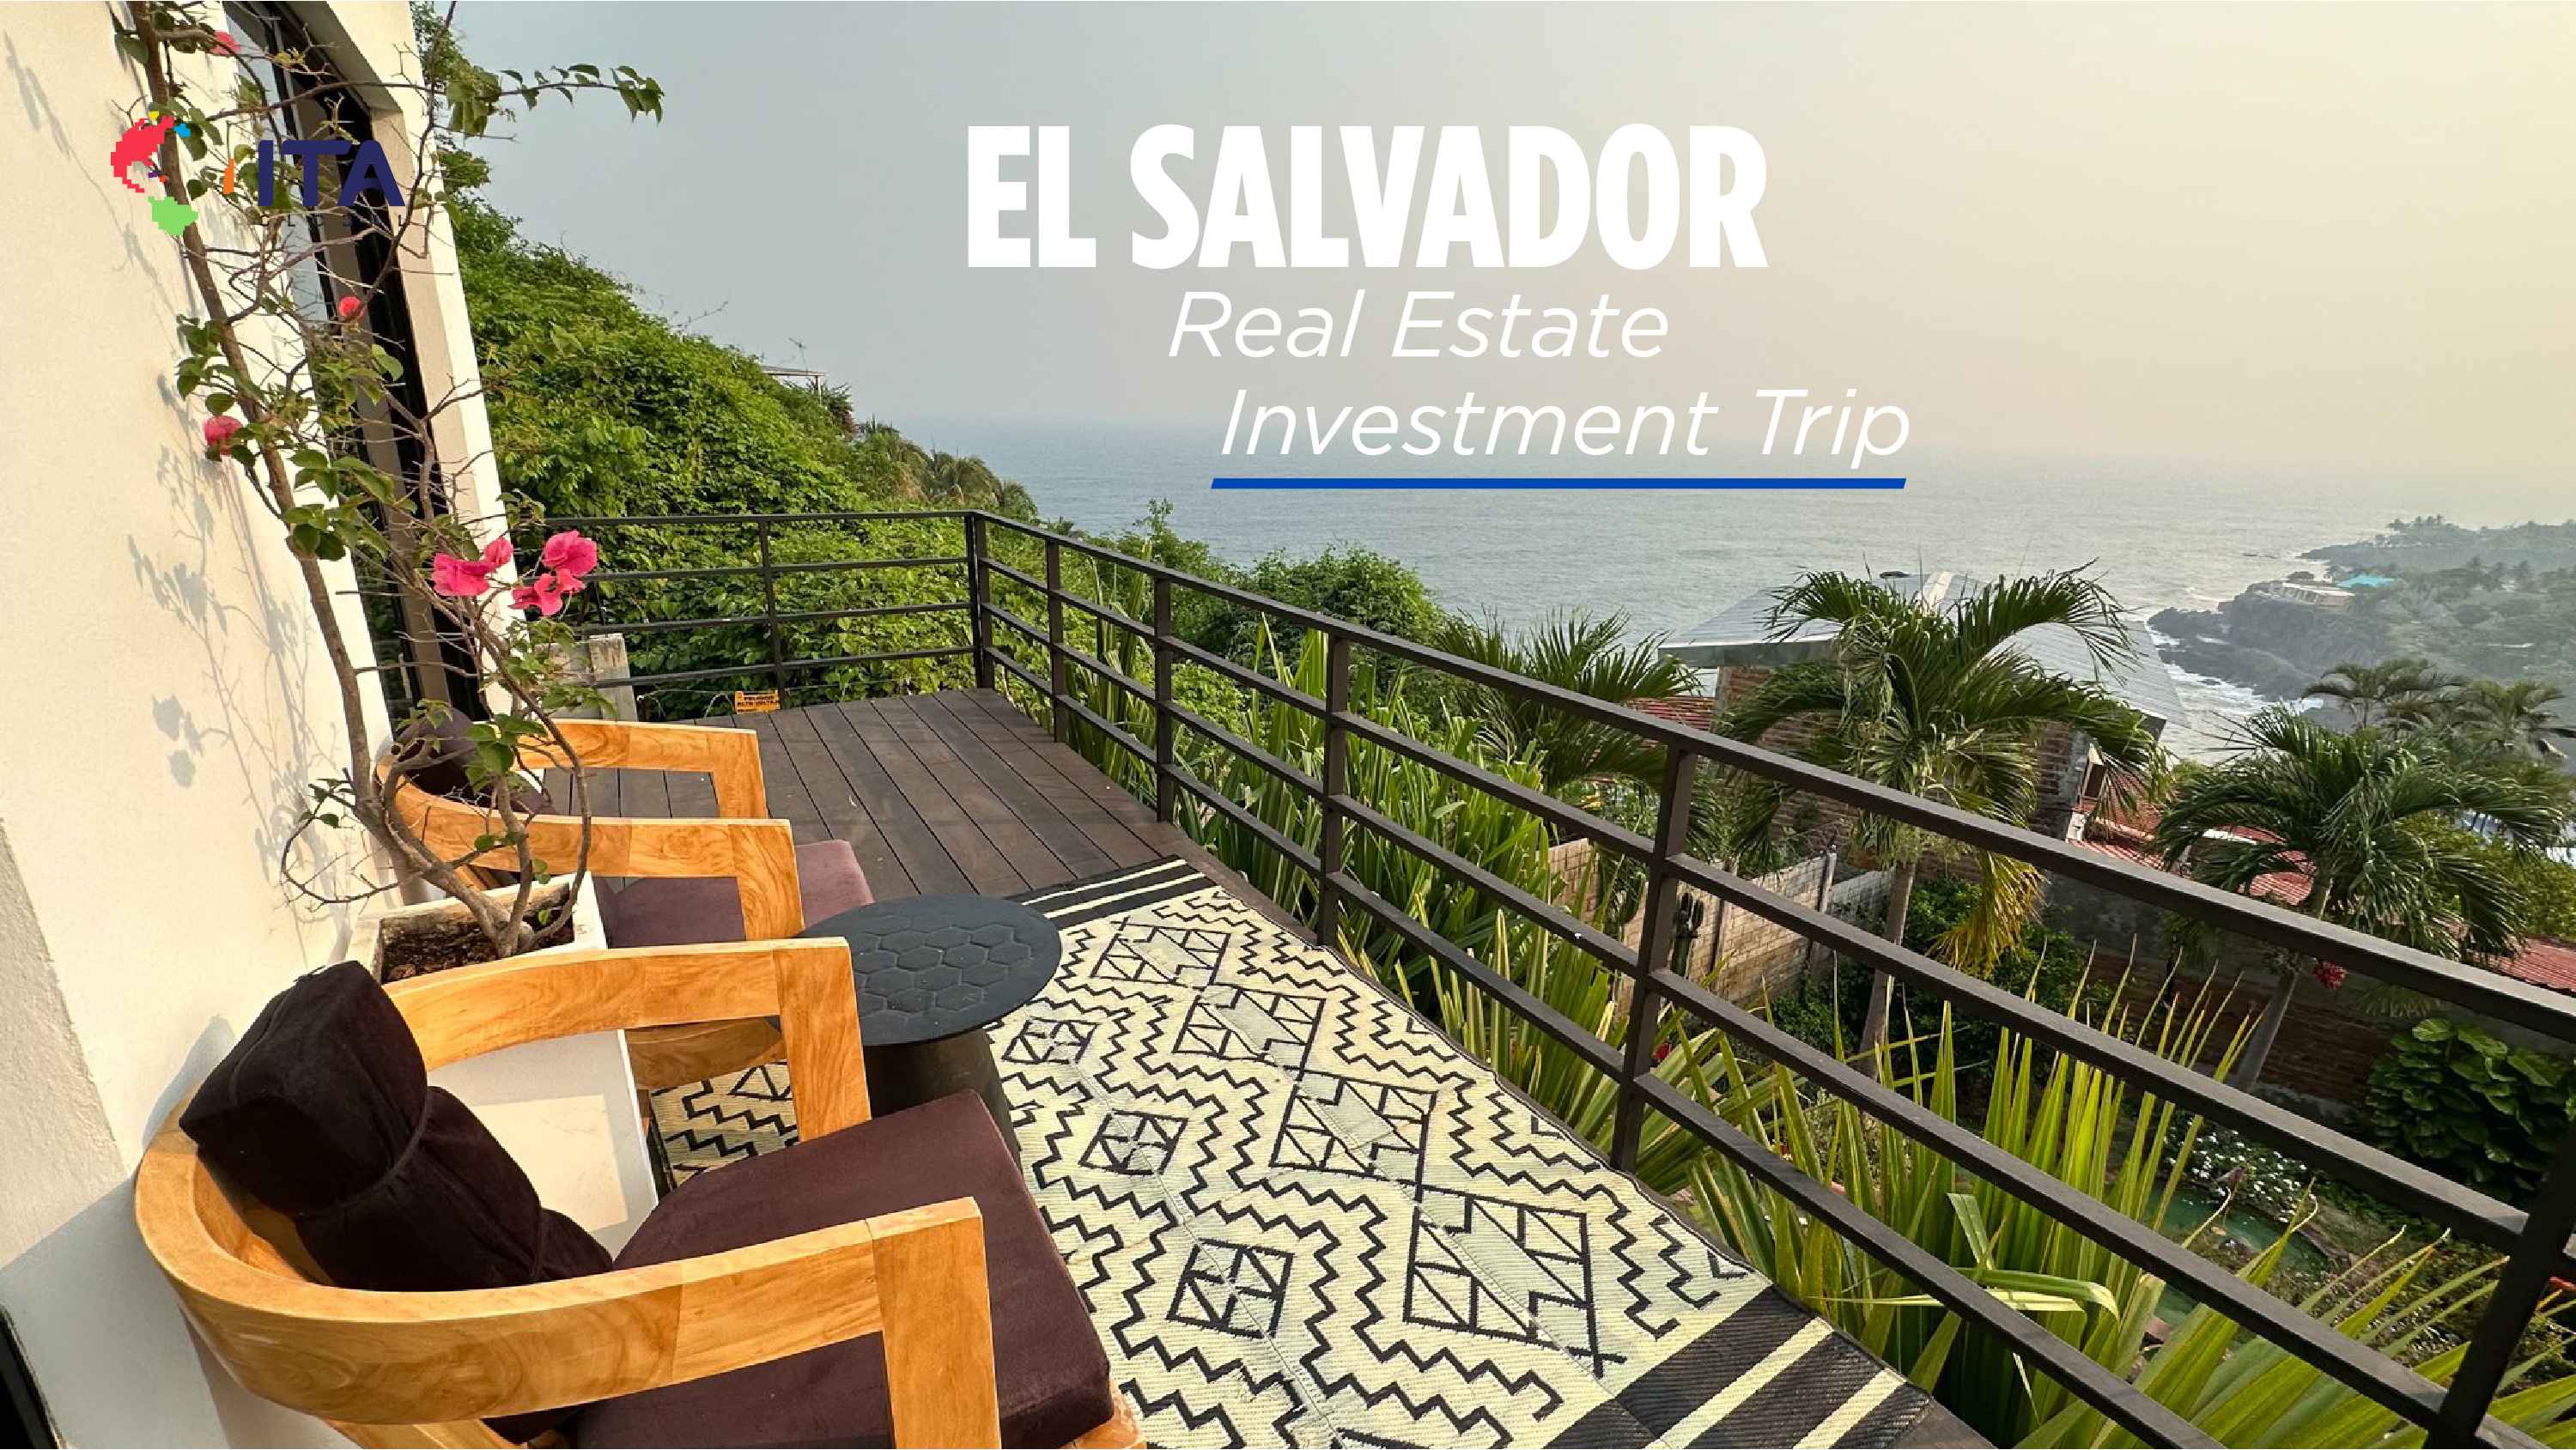 El-Salvador-Real-Estate-Investment-Trip-slide-img